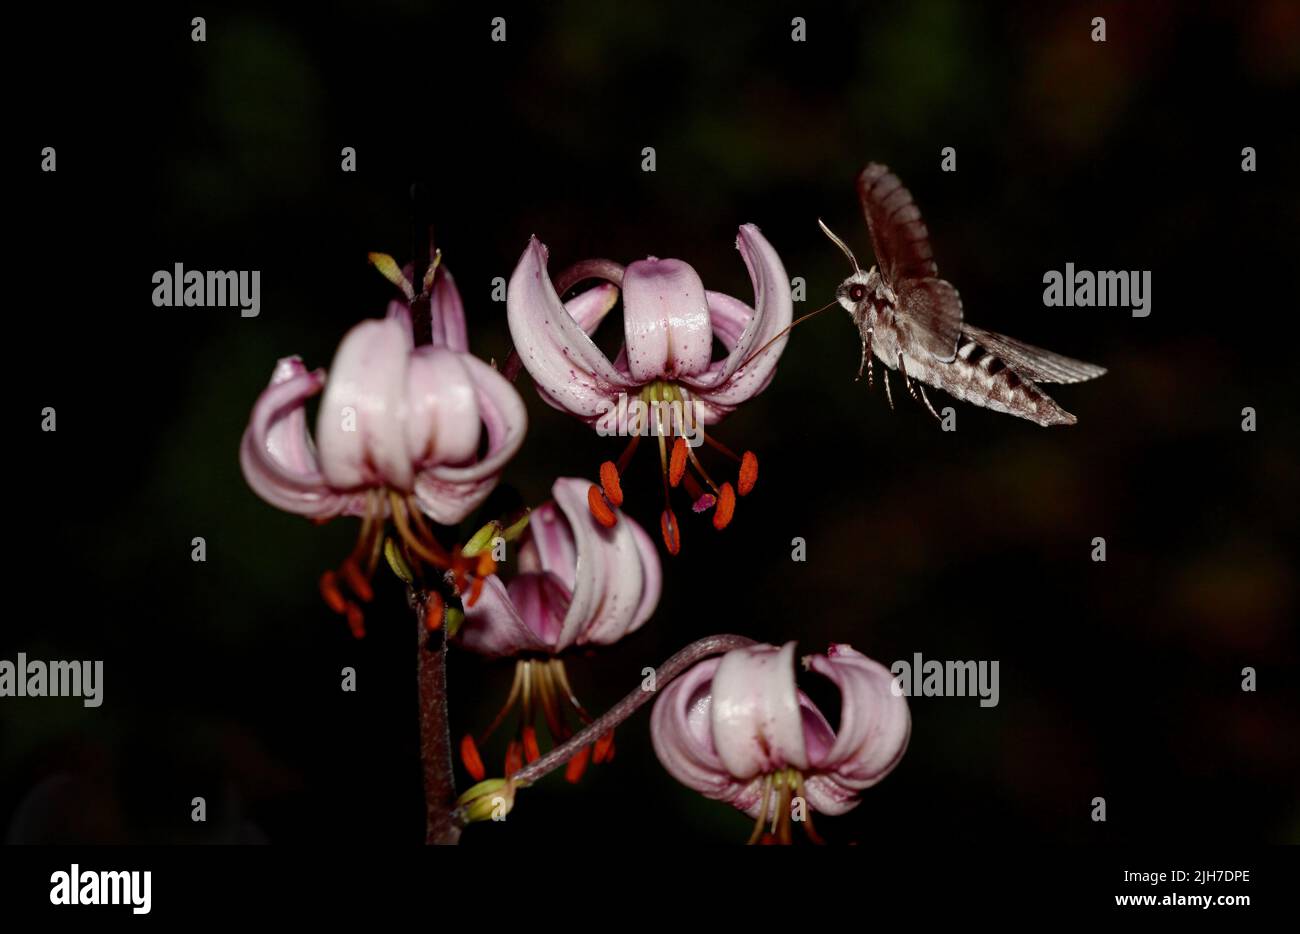 Pyrale de faucon de pin volant et recherchant le nectar dans une nuit Banque D'Images